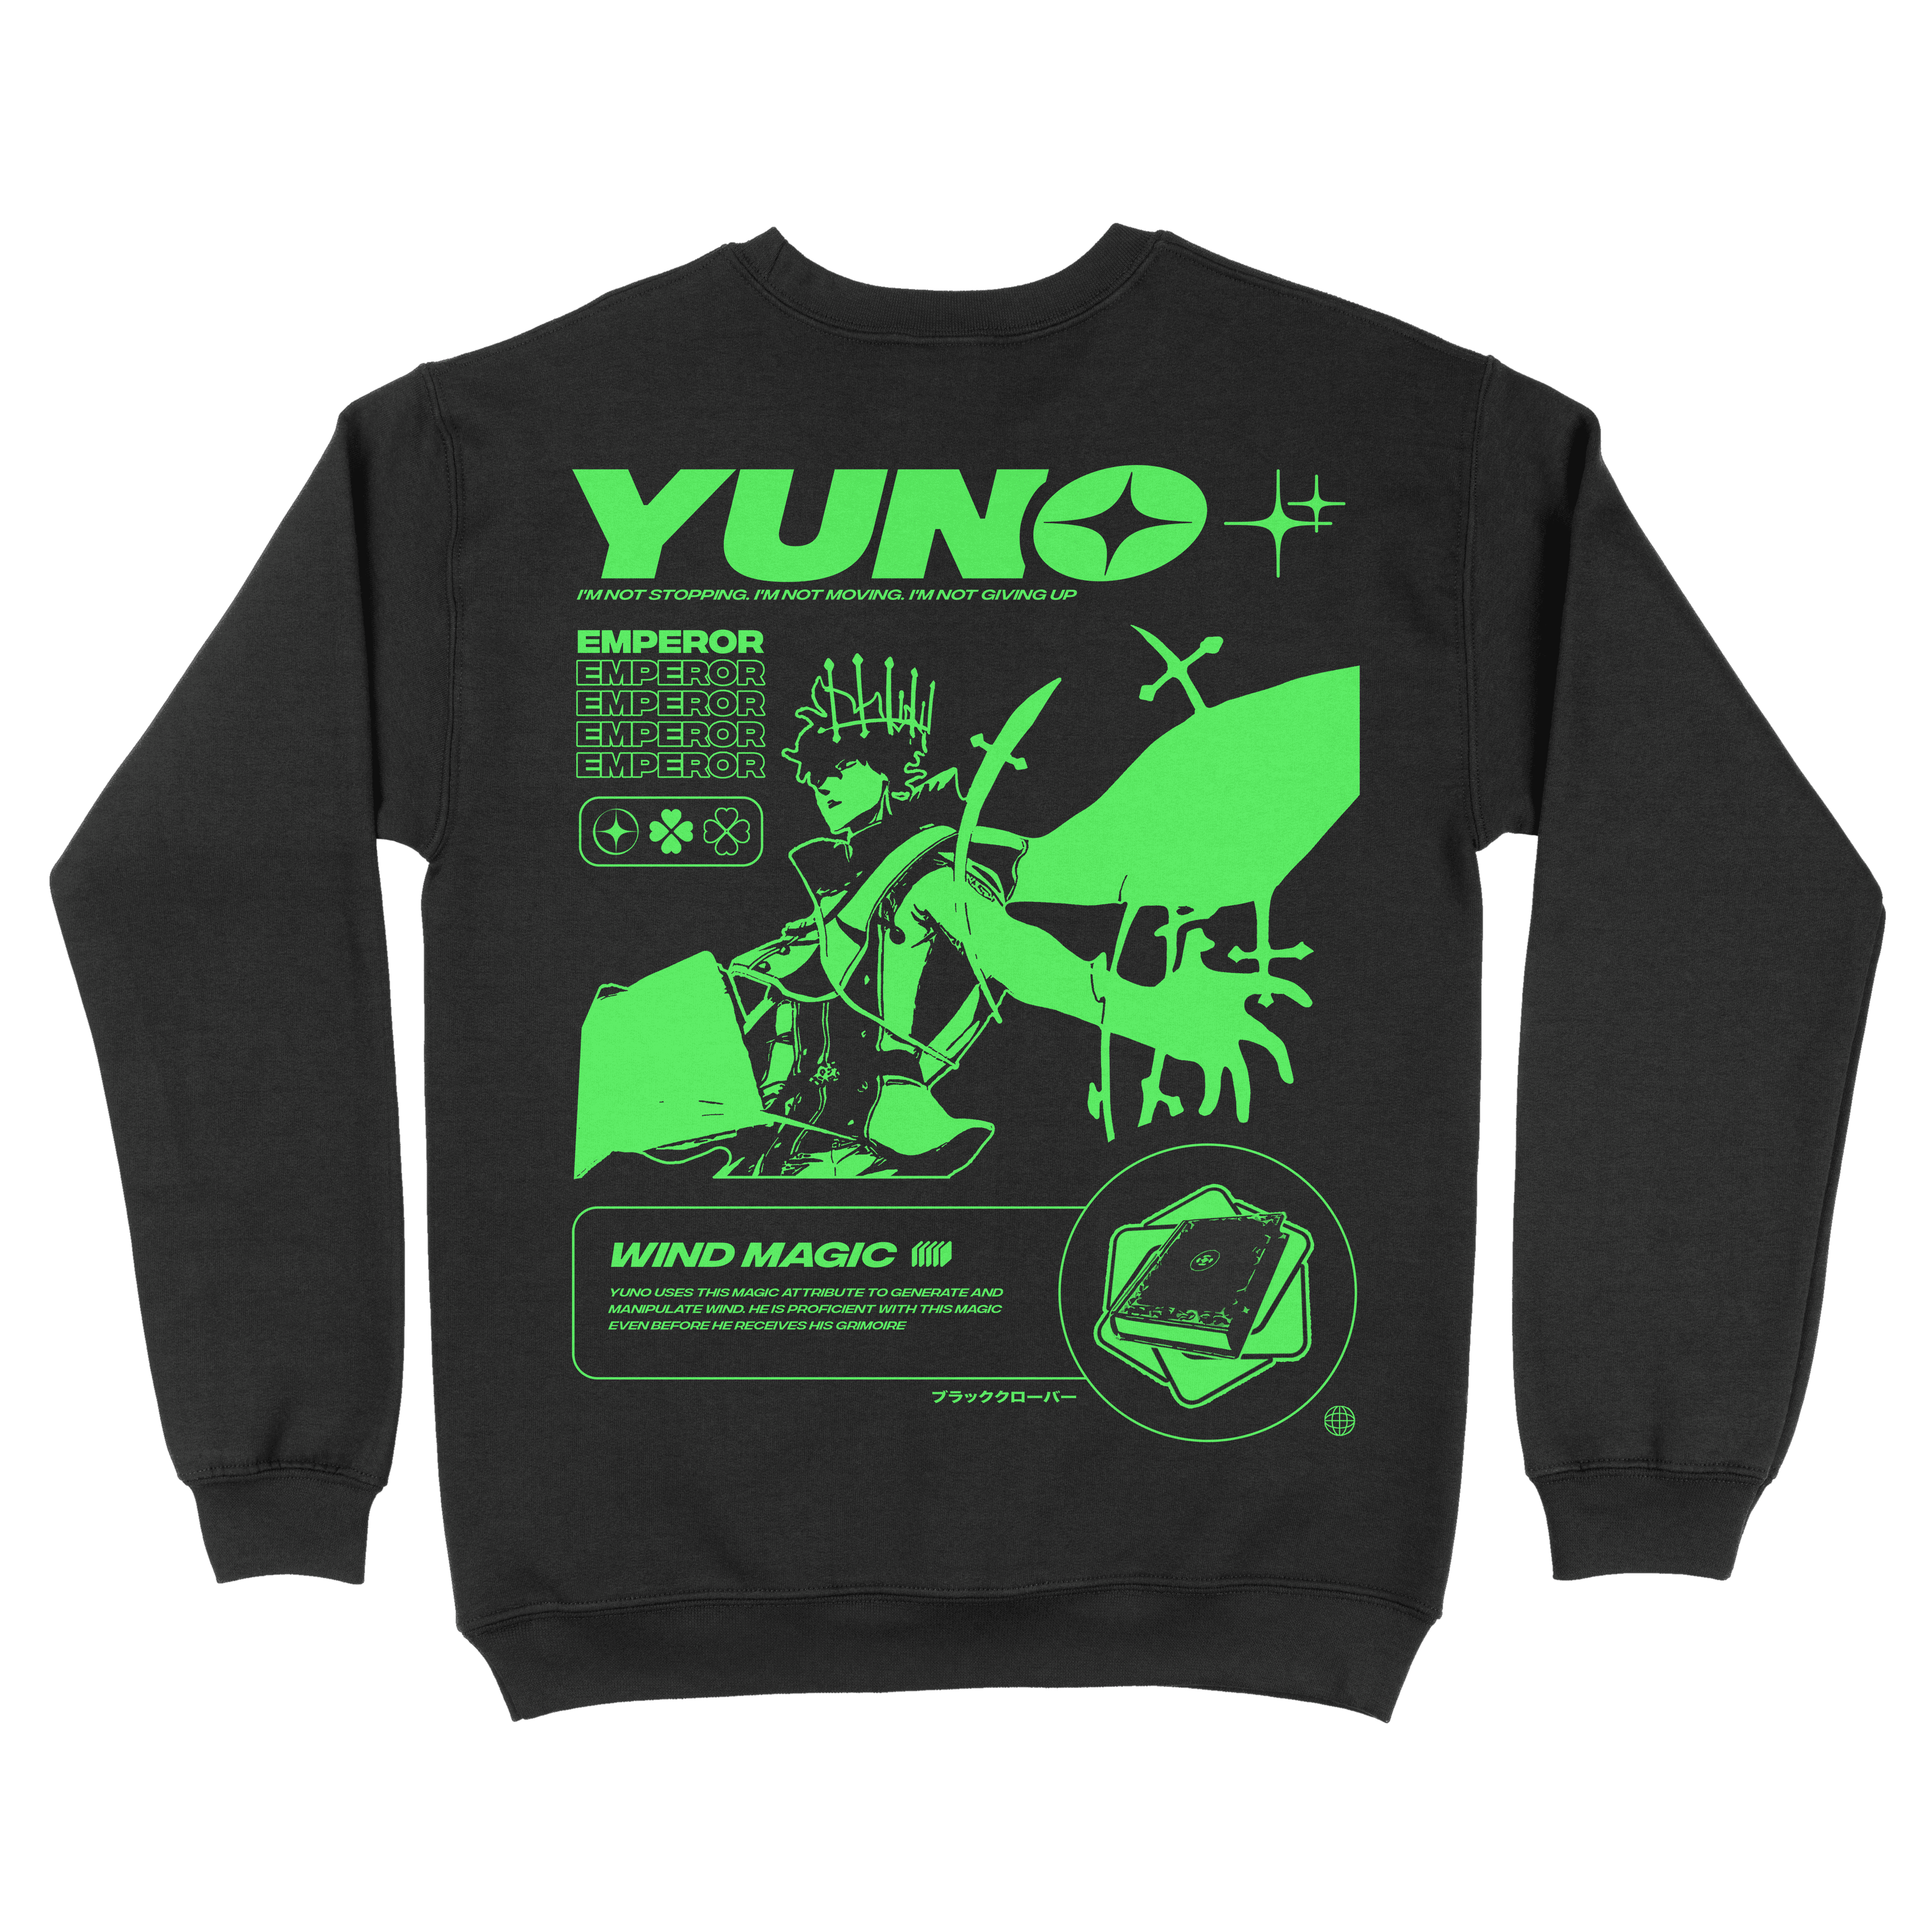 Yuno Black Clover | Sweatshirt